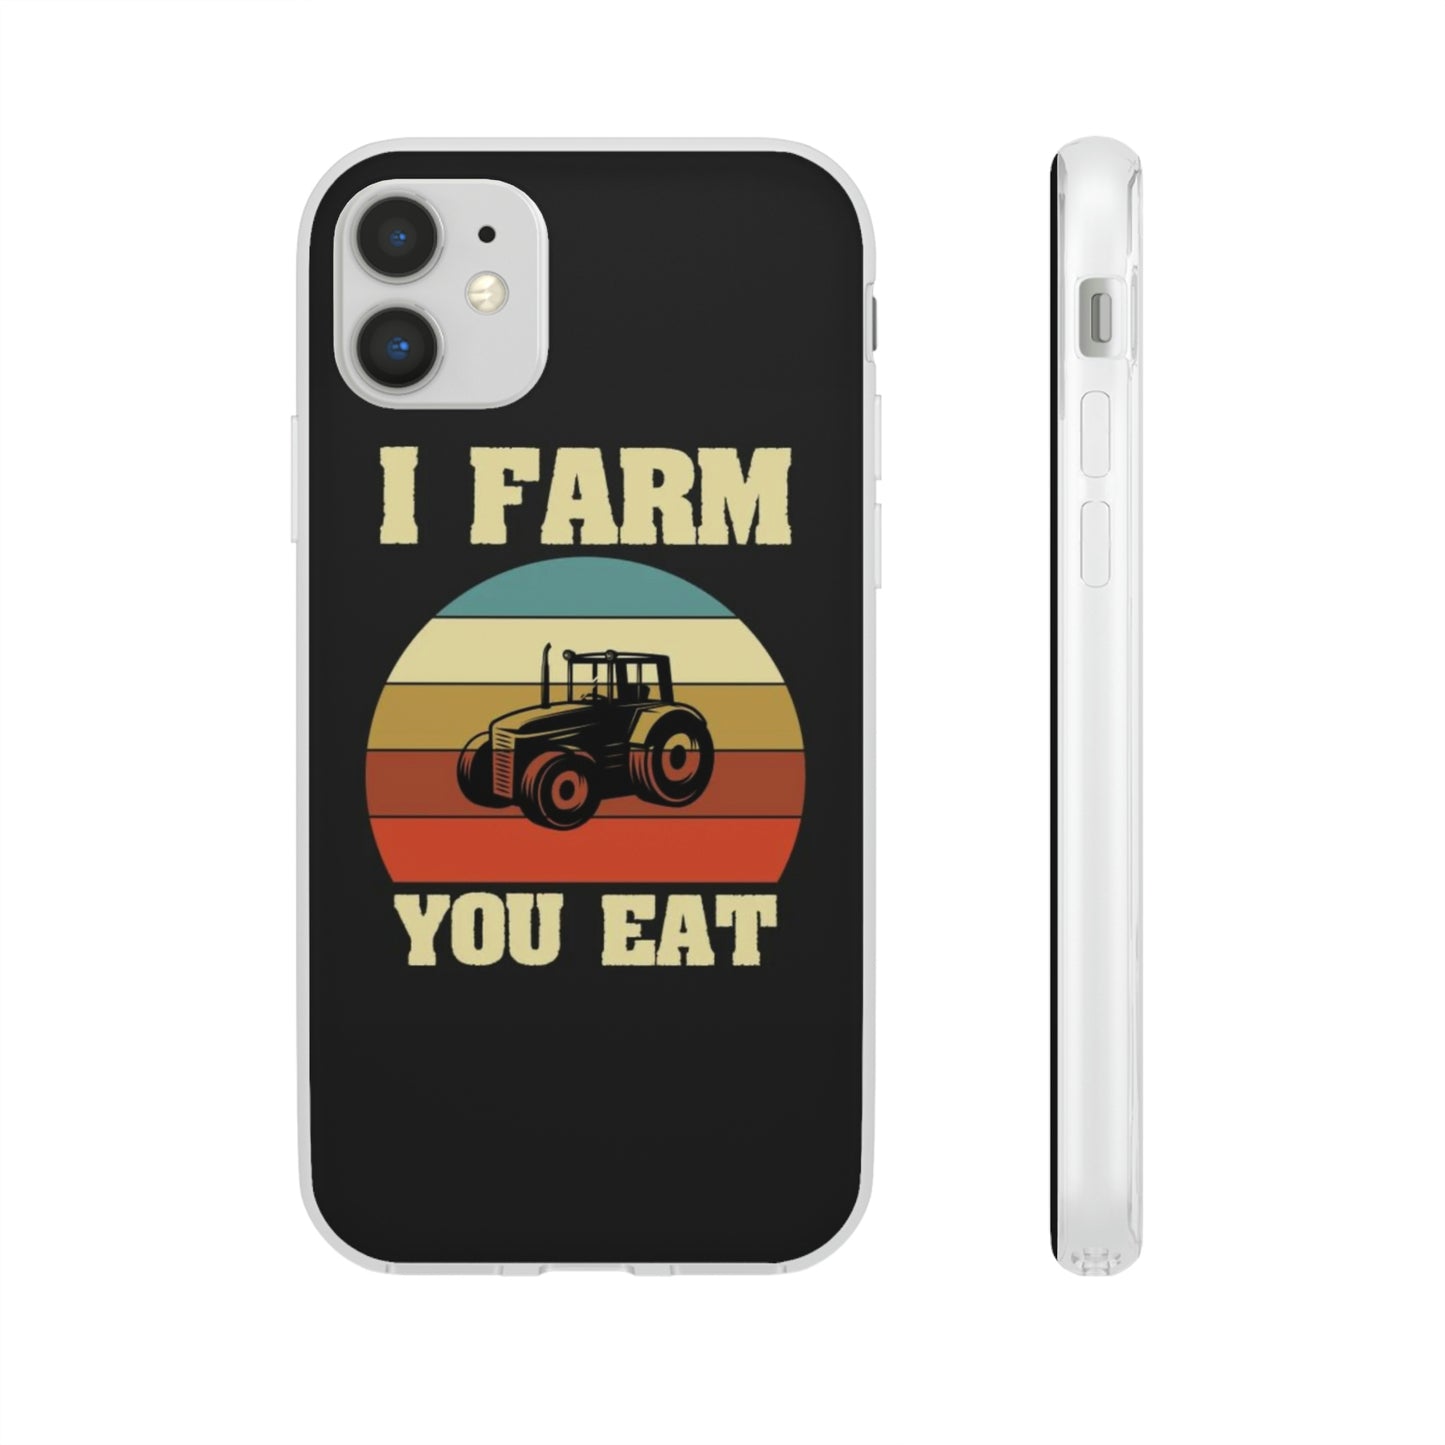 I Farm, You Eat - iPhone